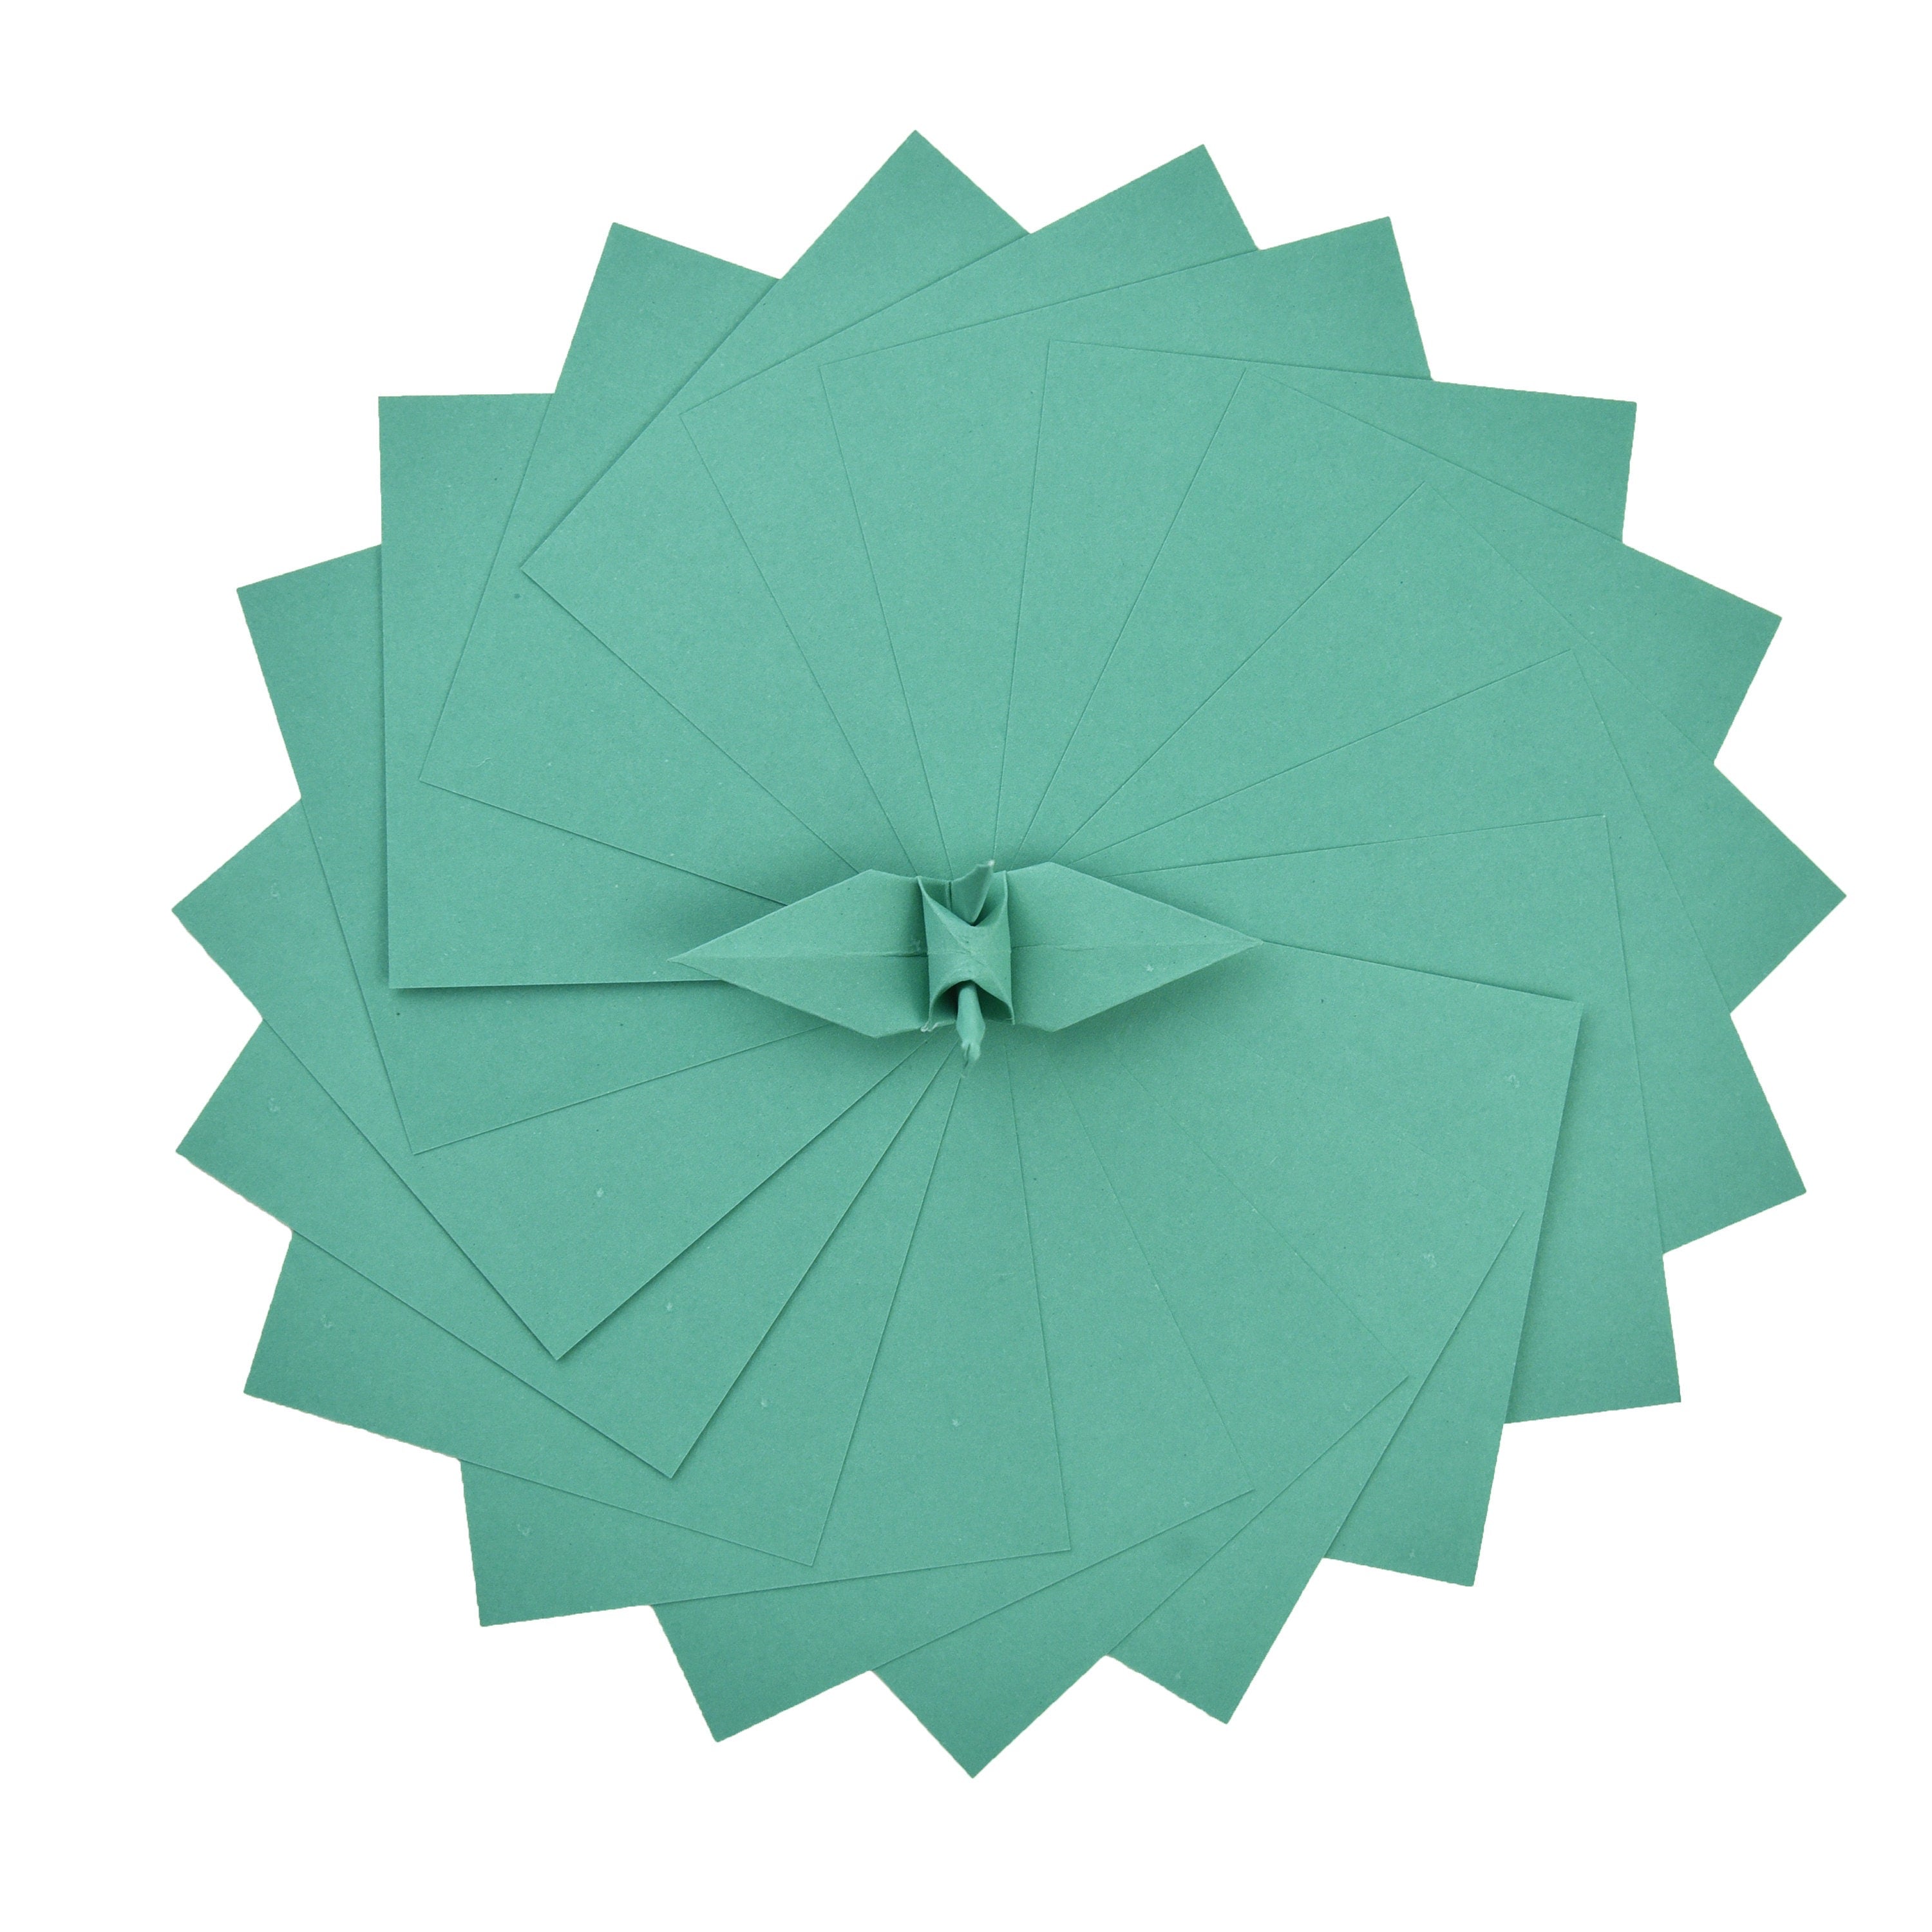 100 fogli di carta origami - 3x3 pollici - Confezione di carta quadrata per piegare, gru origami e decorazioni - S21